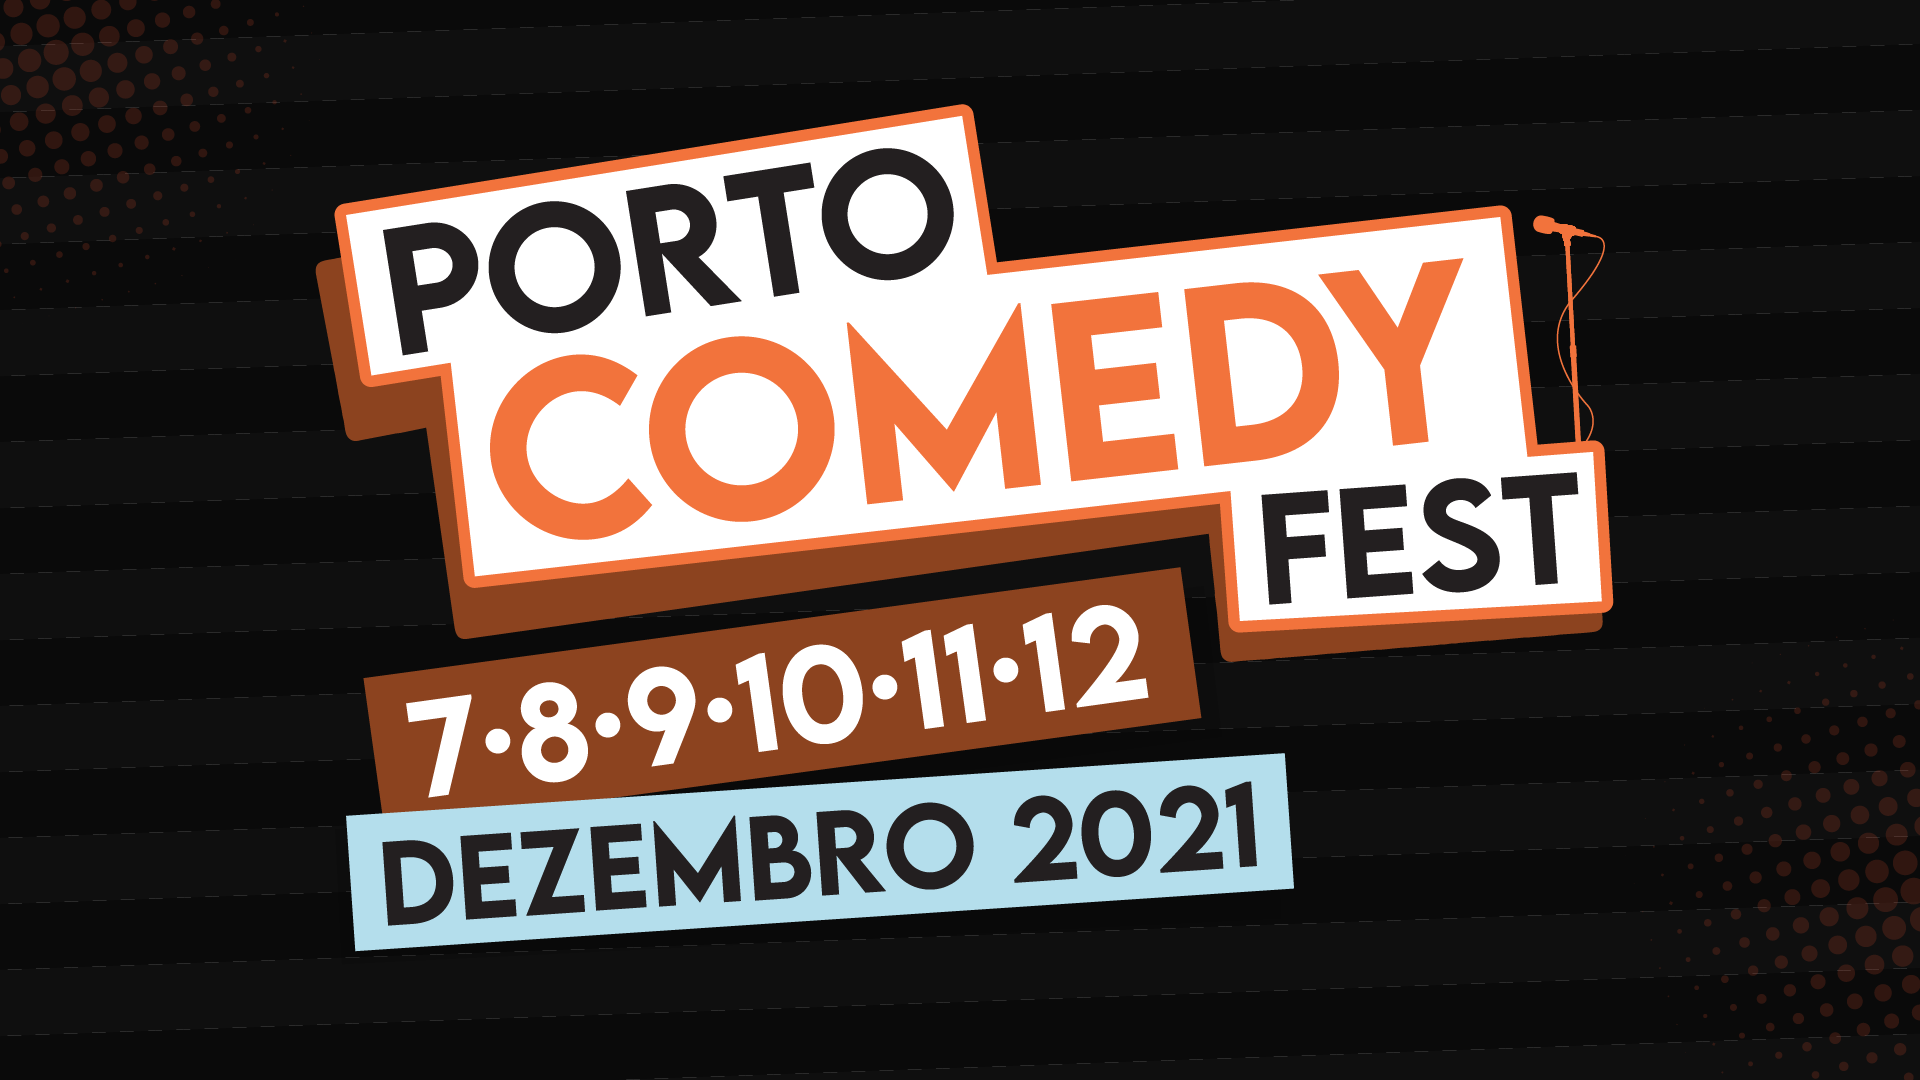 Porto Comedy Fest (Horizontal) – Logo com data